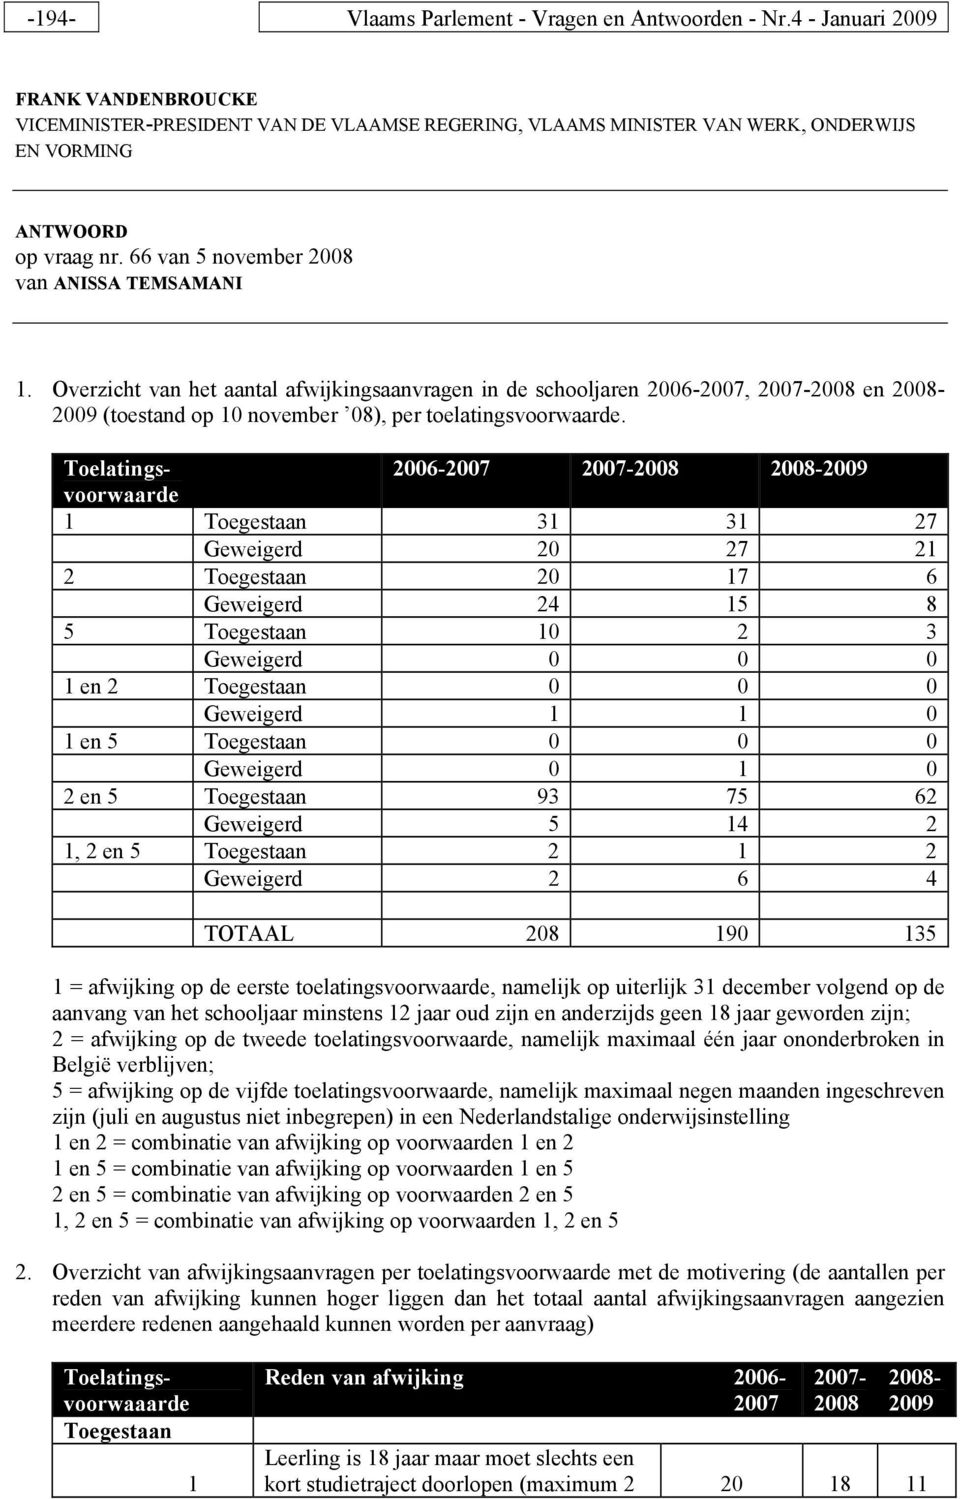 Overzicht van het aantal afwijkingsaanvragen in de schooljaren 2006-2007, 2007-2008 en 2008-2009 (toestand op 10 november 08), per toelatingsvoorwaarde.